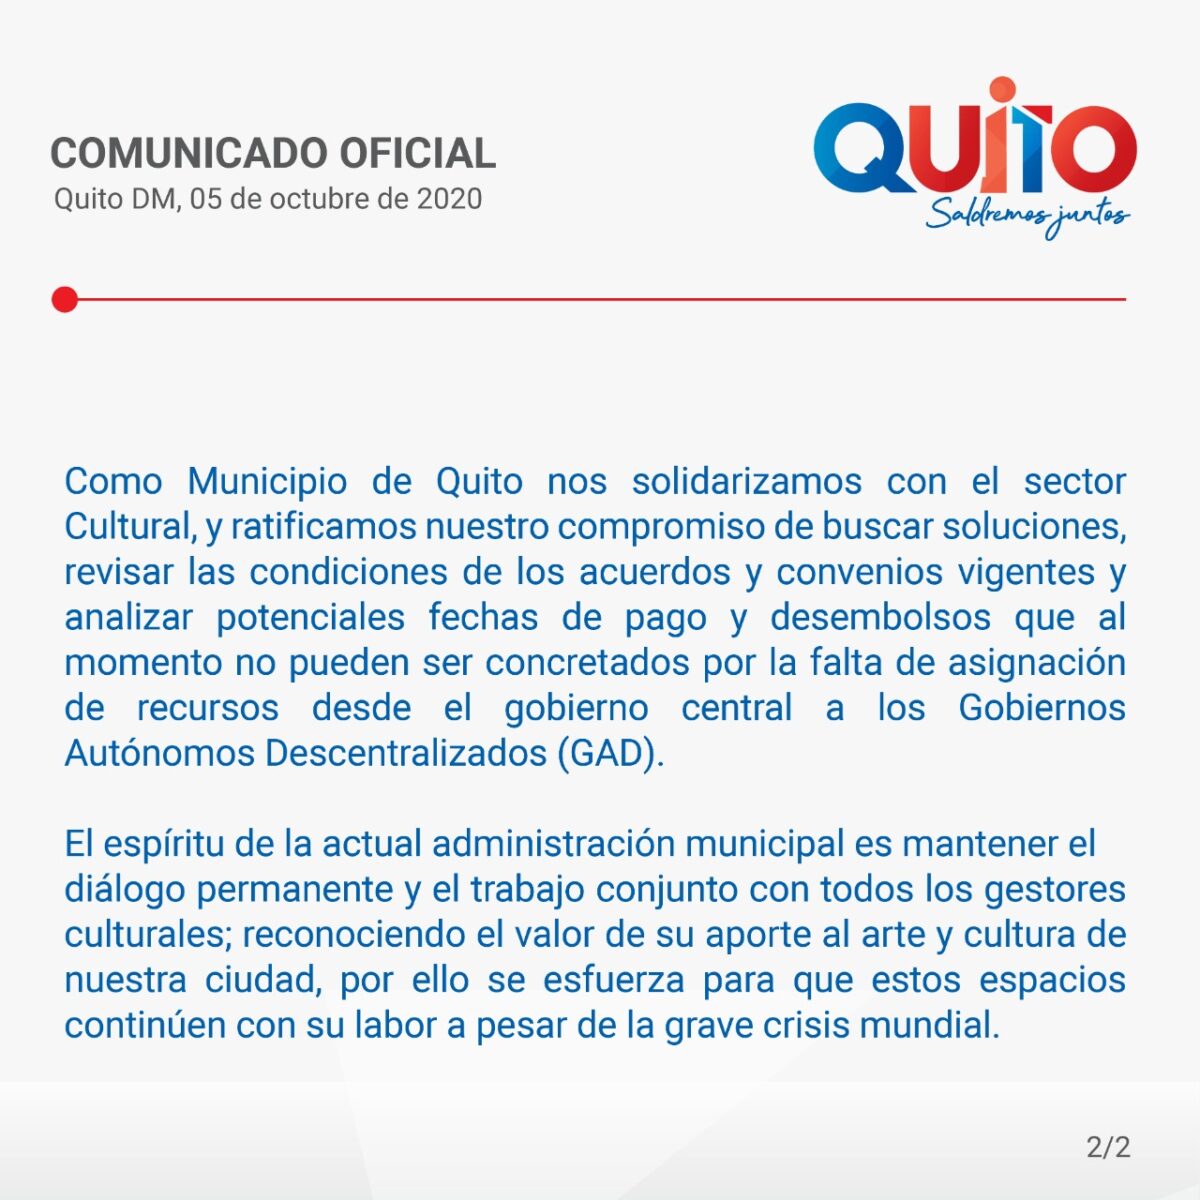 Comunicado del Municipio de Quito ante falta de recursos de la Fundación Teatro Nacional Sucre.